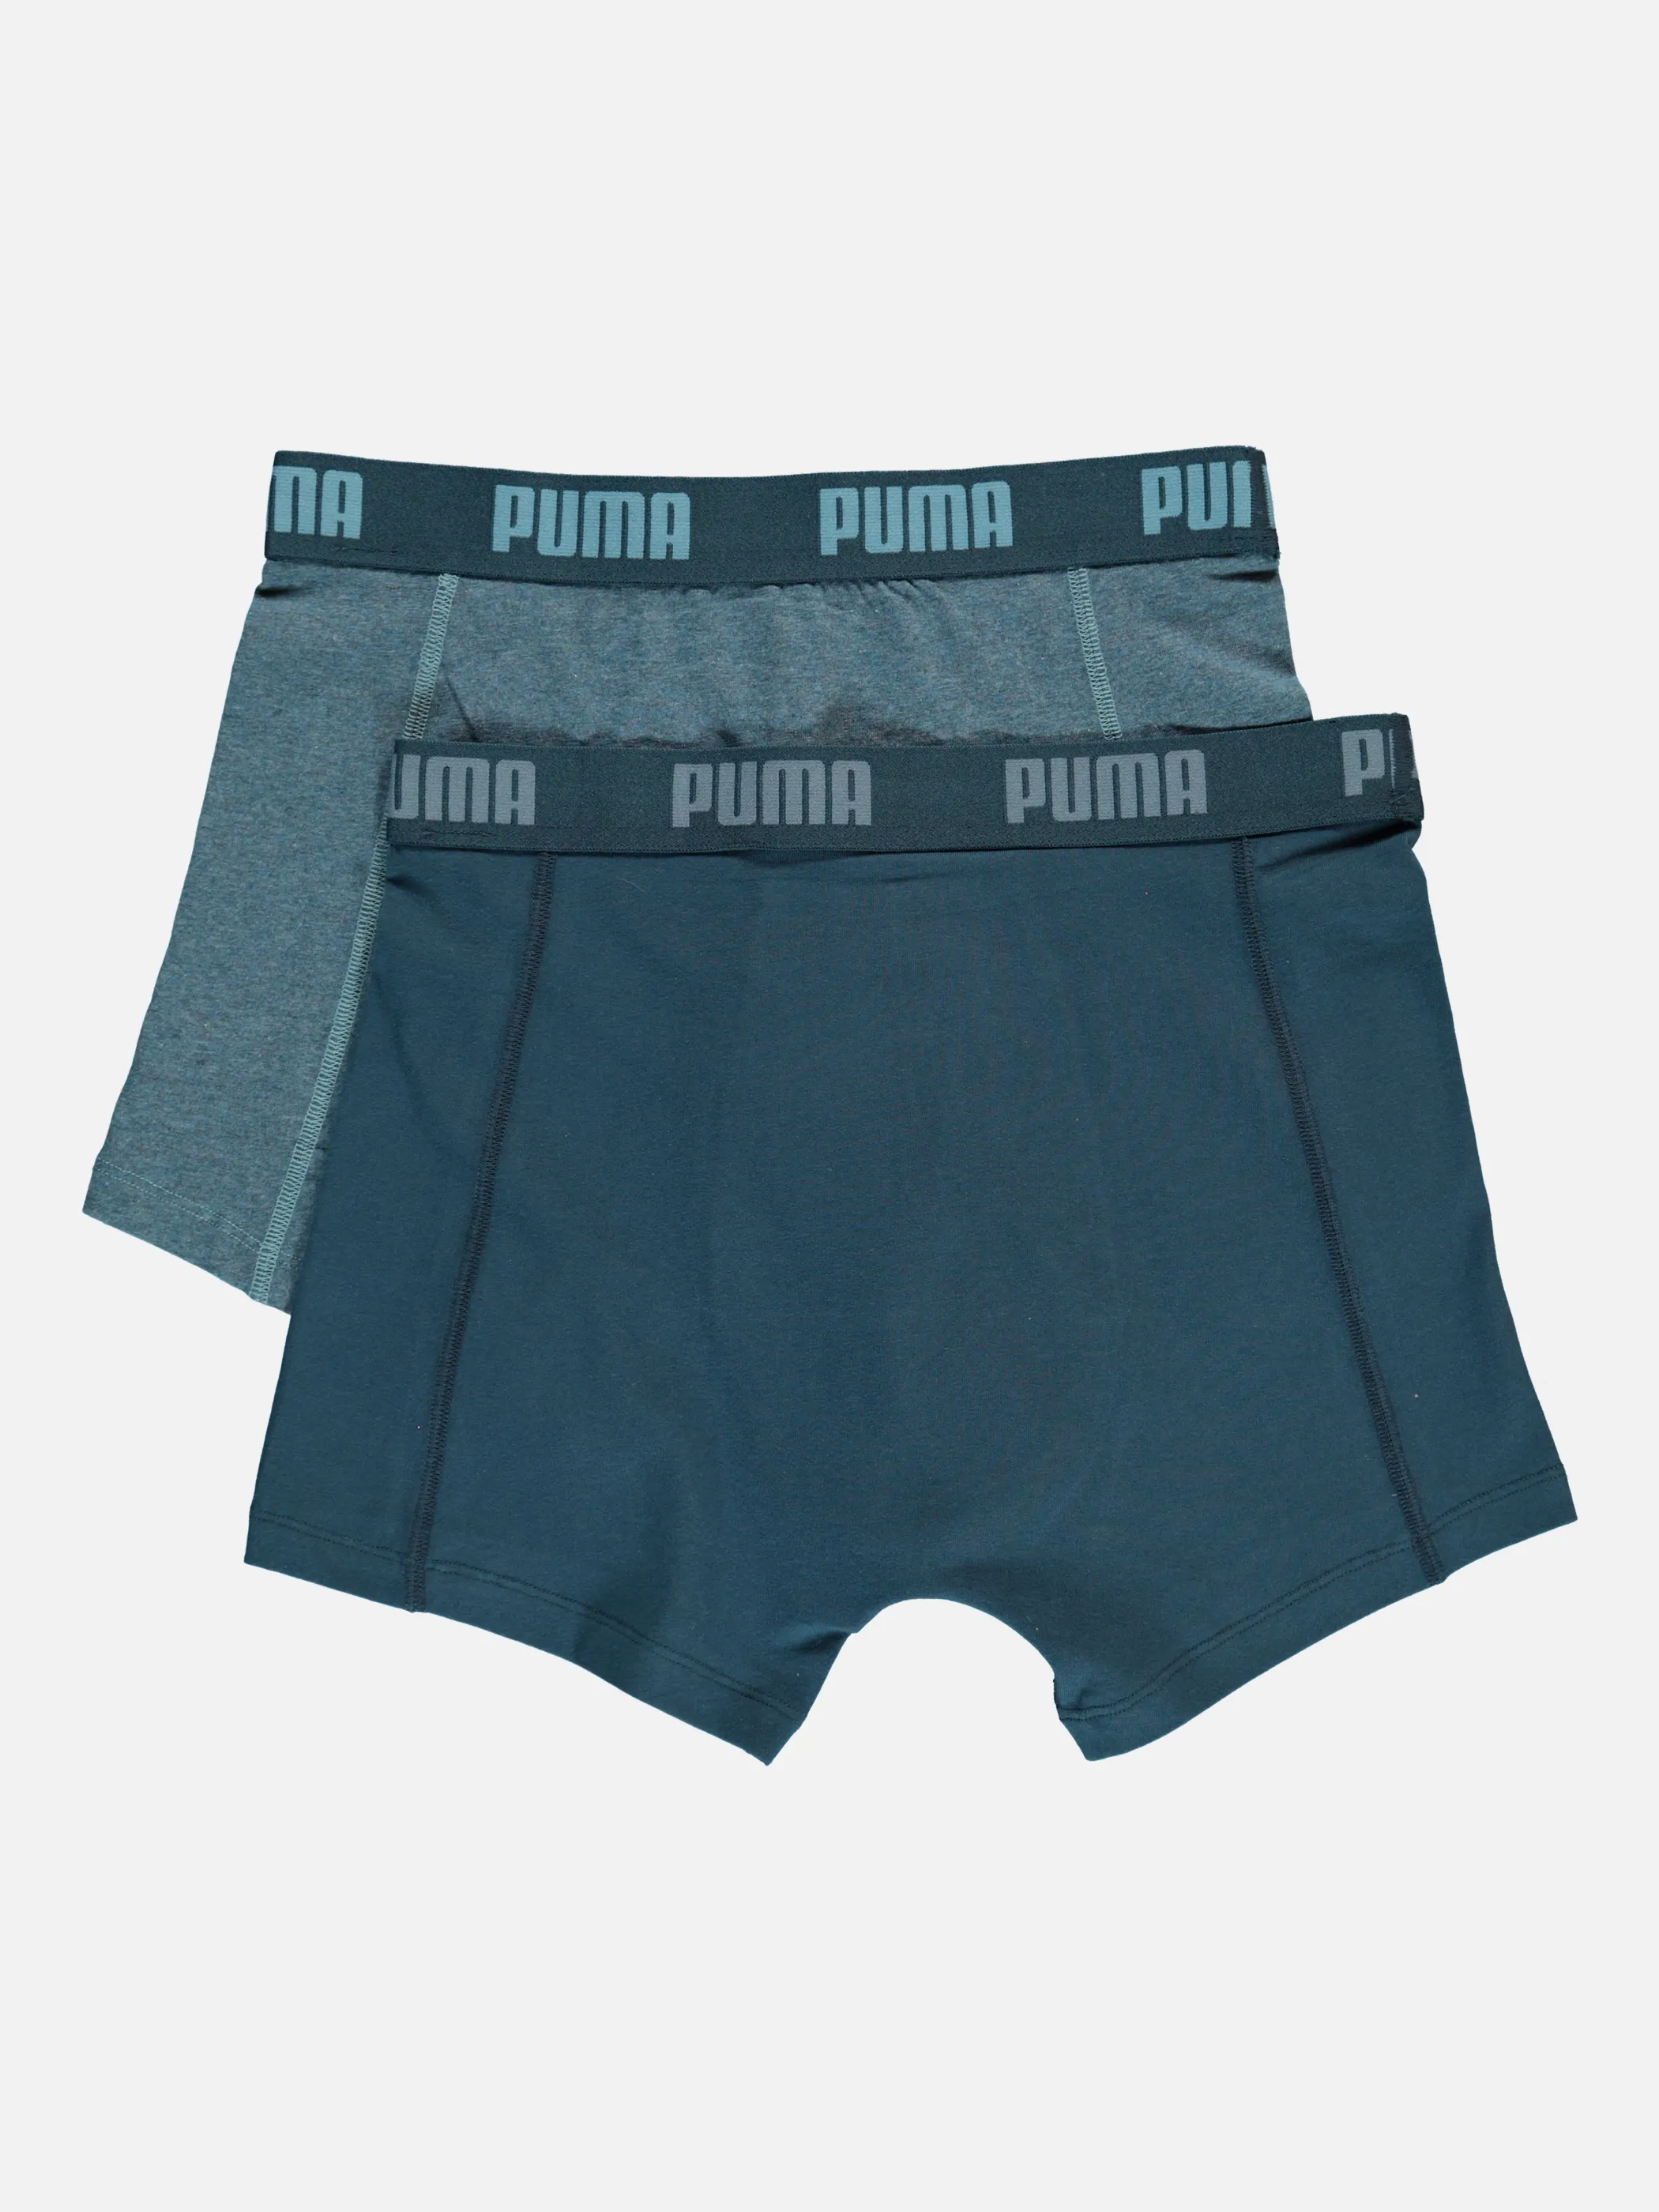 Puma Puma Basic Boxer 2er Pack Blau 762020 DENIM 2